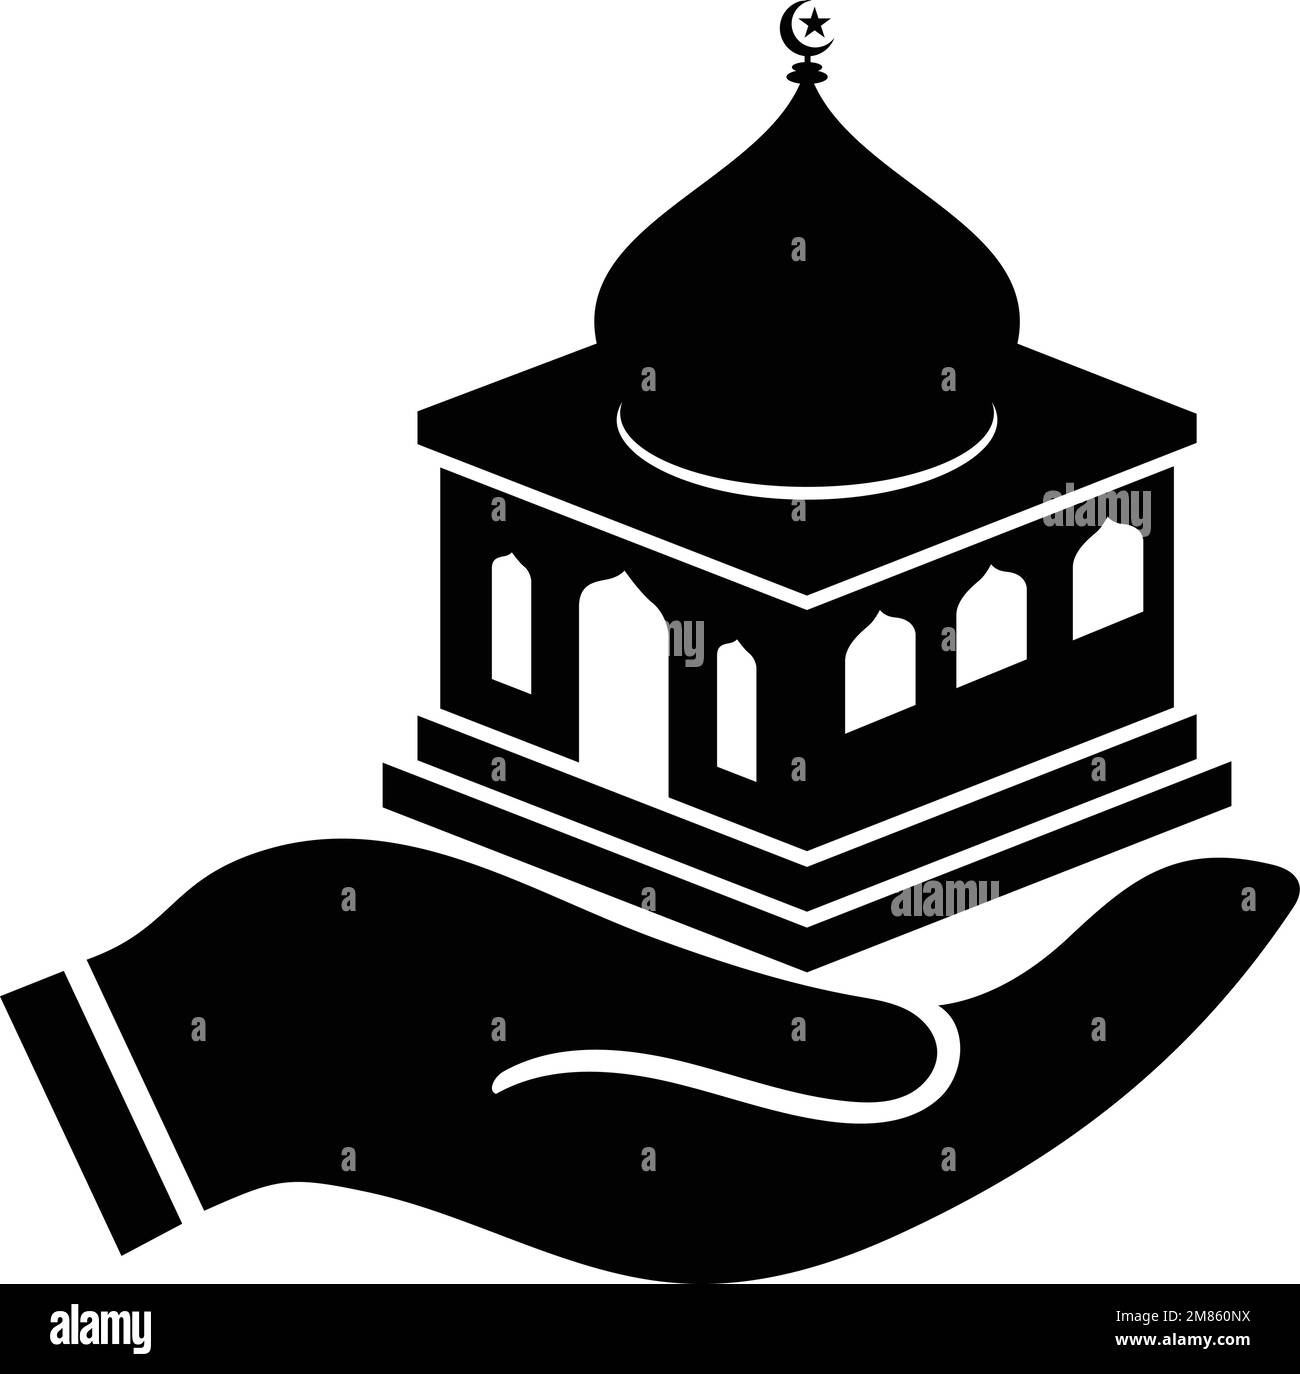 Eine Hand hält das Vektorsymbol der Moschee. Schwarz auf Weiß. Professionell, modern und kreativ. Stock Vektor